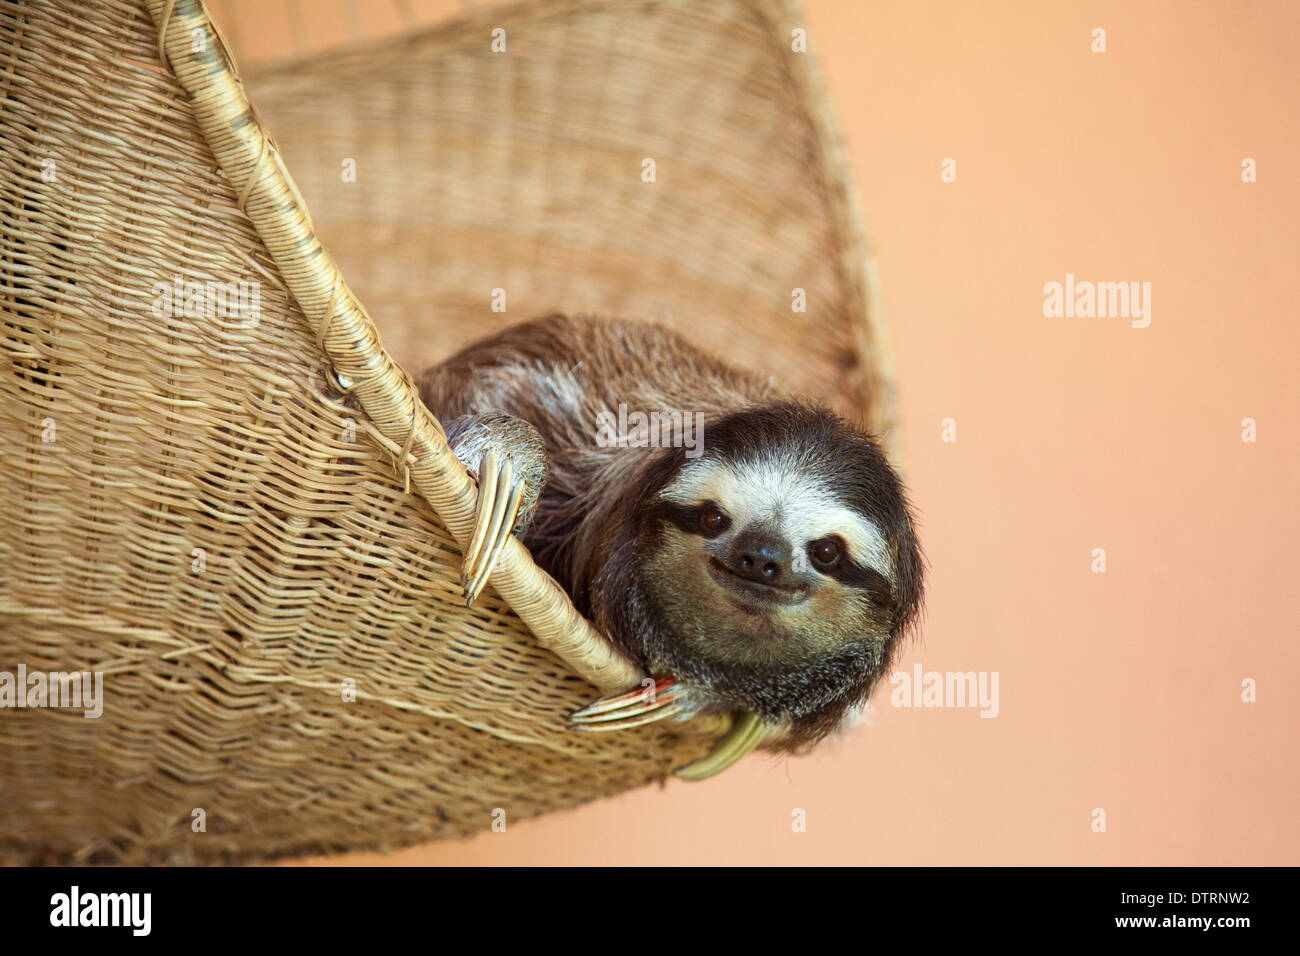 Gerettete Dreizottel-Sloth (Bradypus variegatus), die in einem Korb im Sloth-Heiligtum von Costa Rica ruht Stockfoto